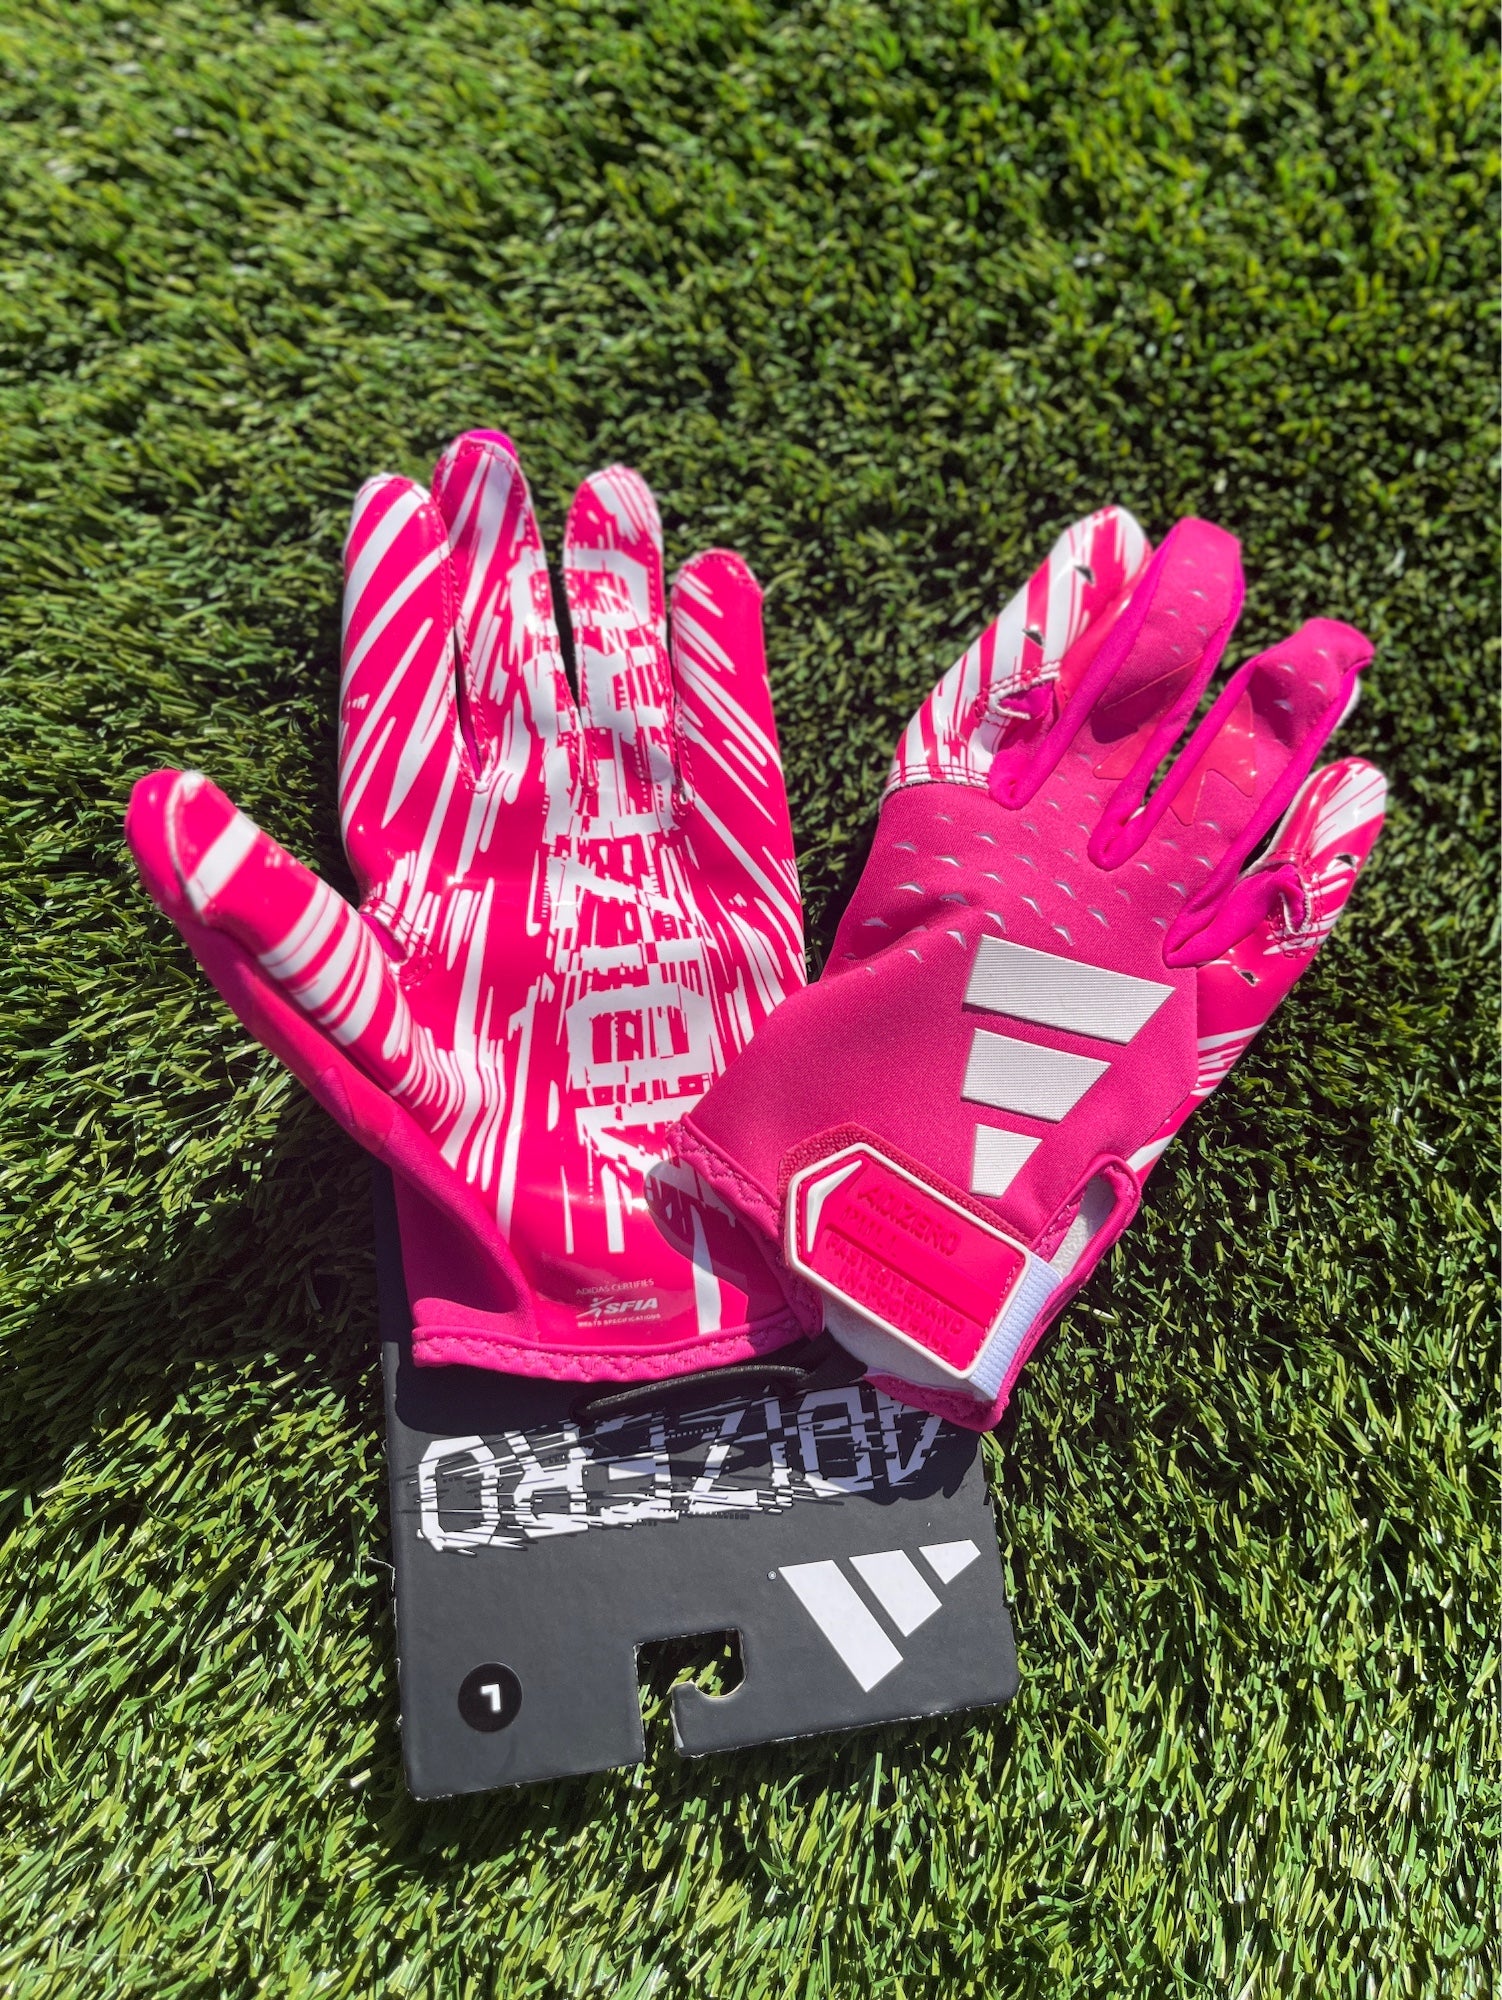 Pink Football Gear & Equipment